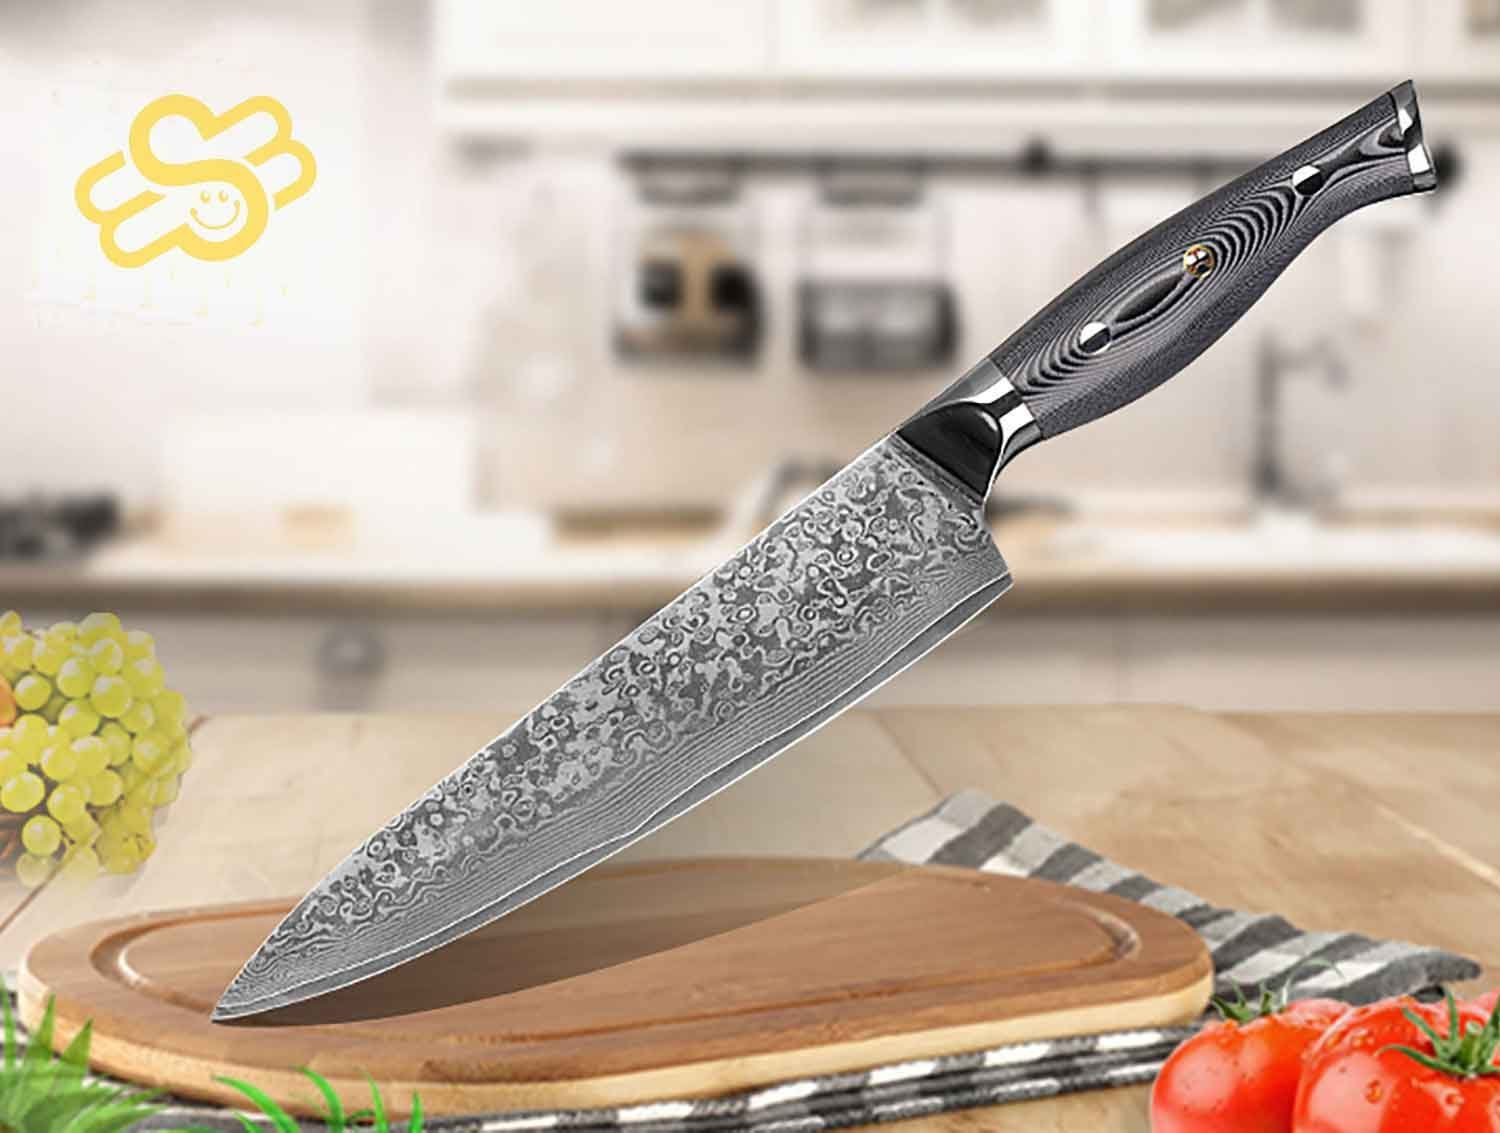 Muxel Kochmesser Kochmesser Küchenmesser Carbon Damast-Klinge Damastmesser Messer 62